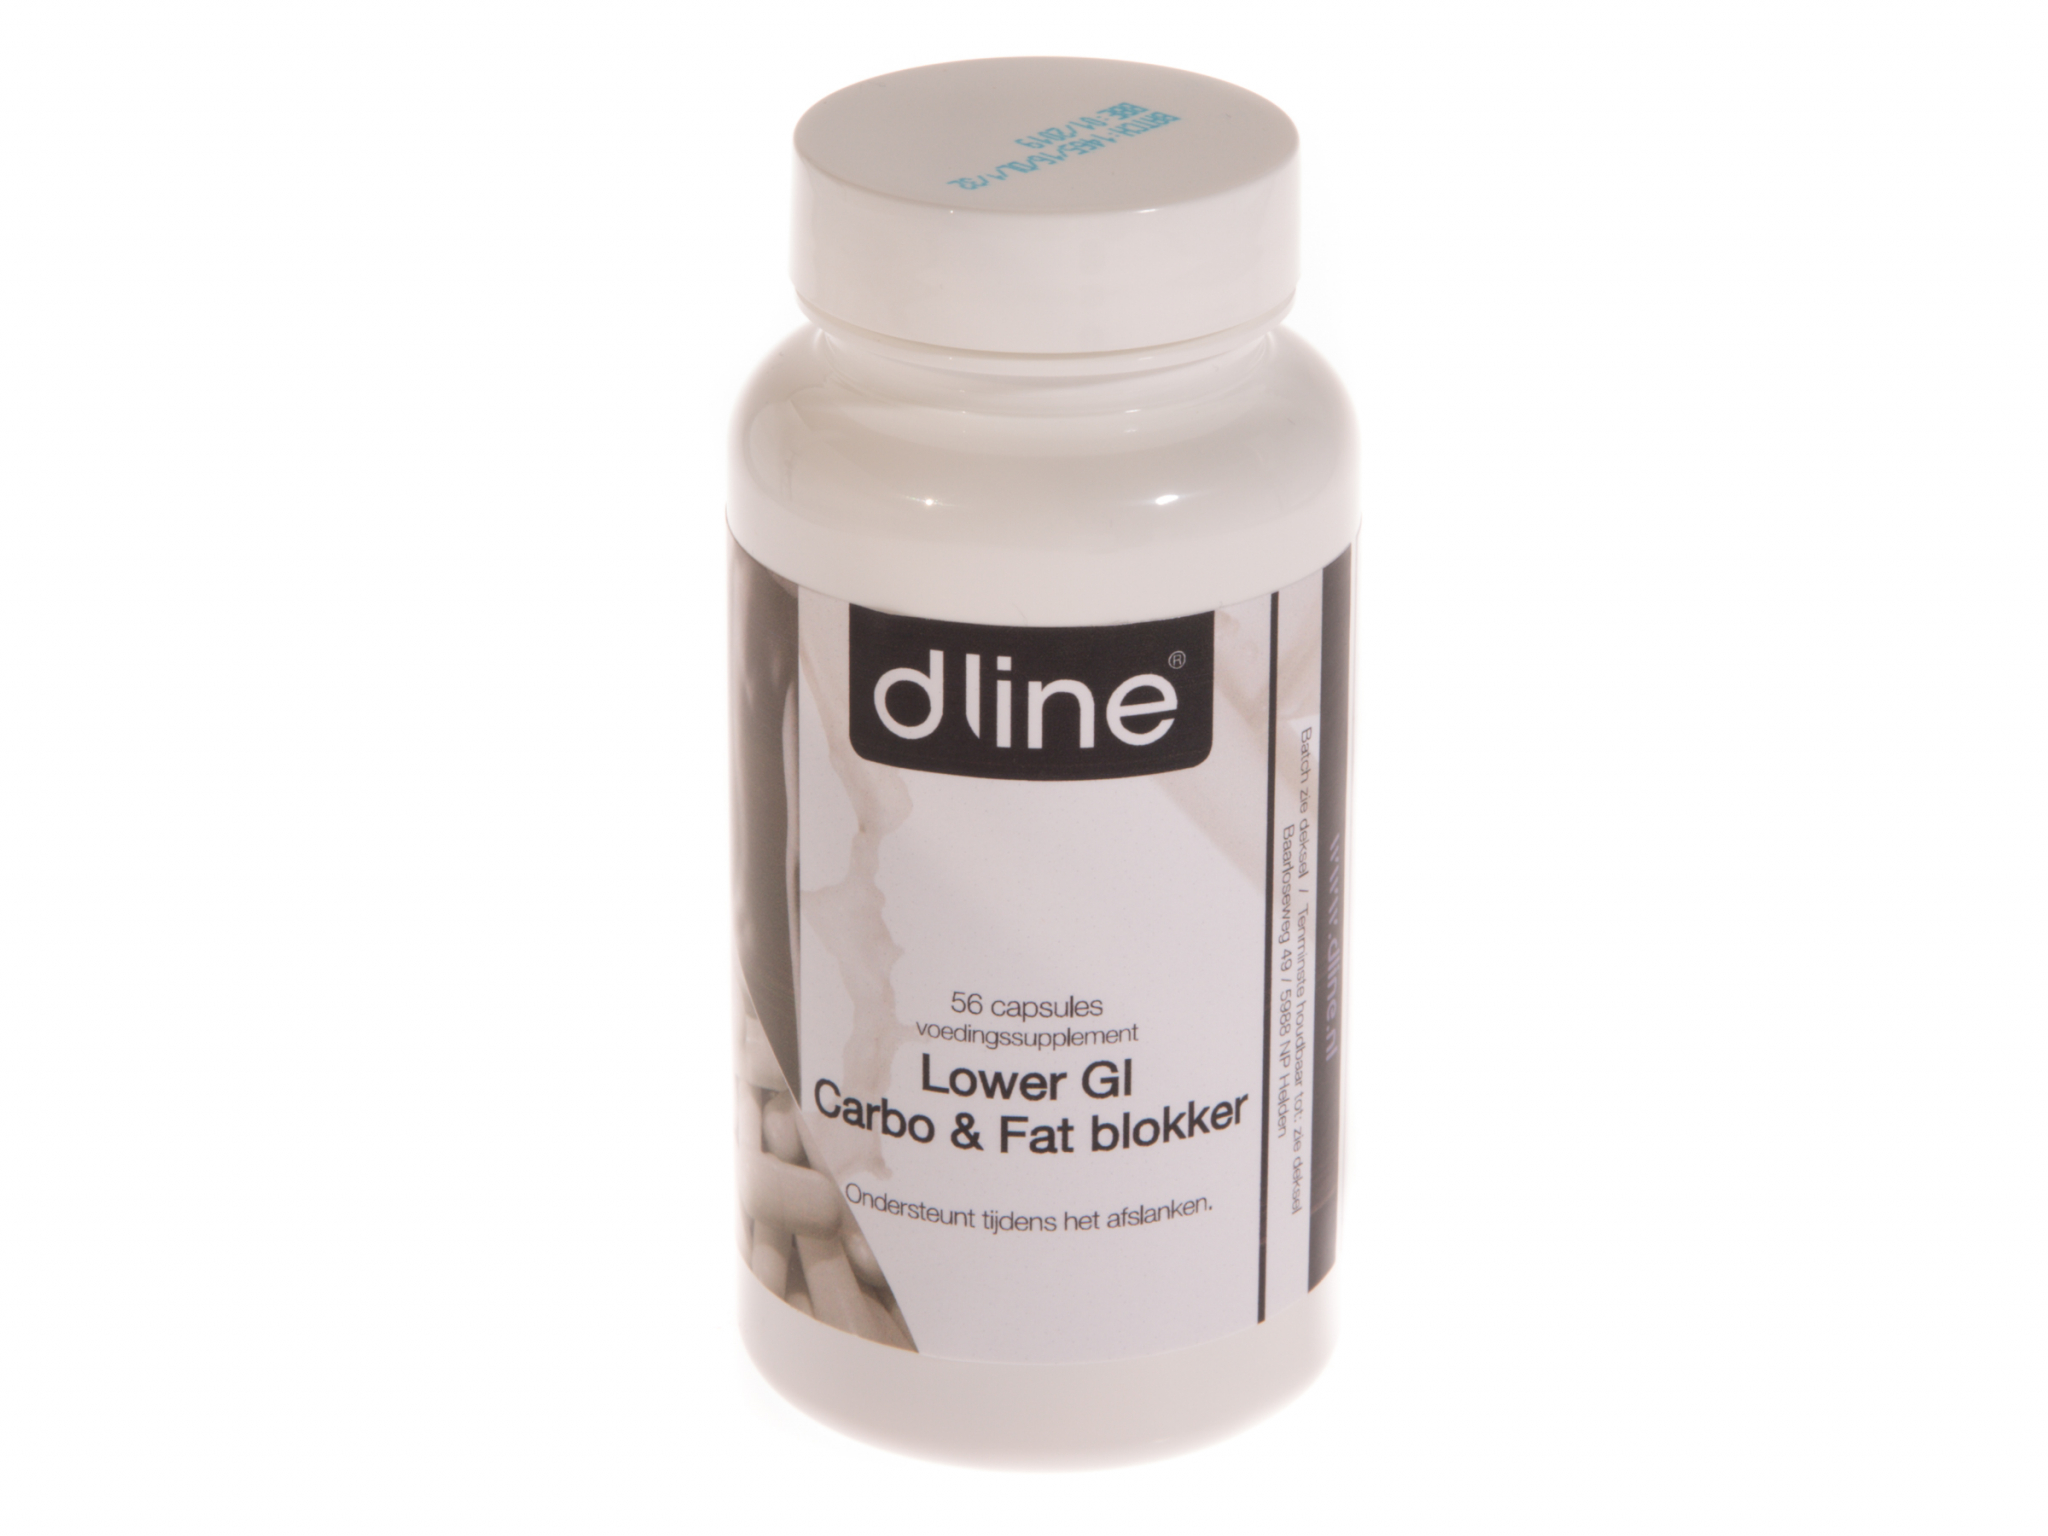 Dline Lower GI carbo & fat blocker